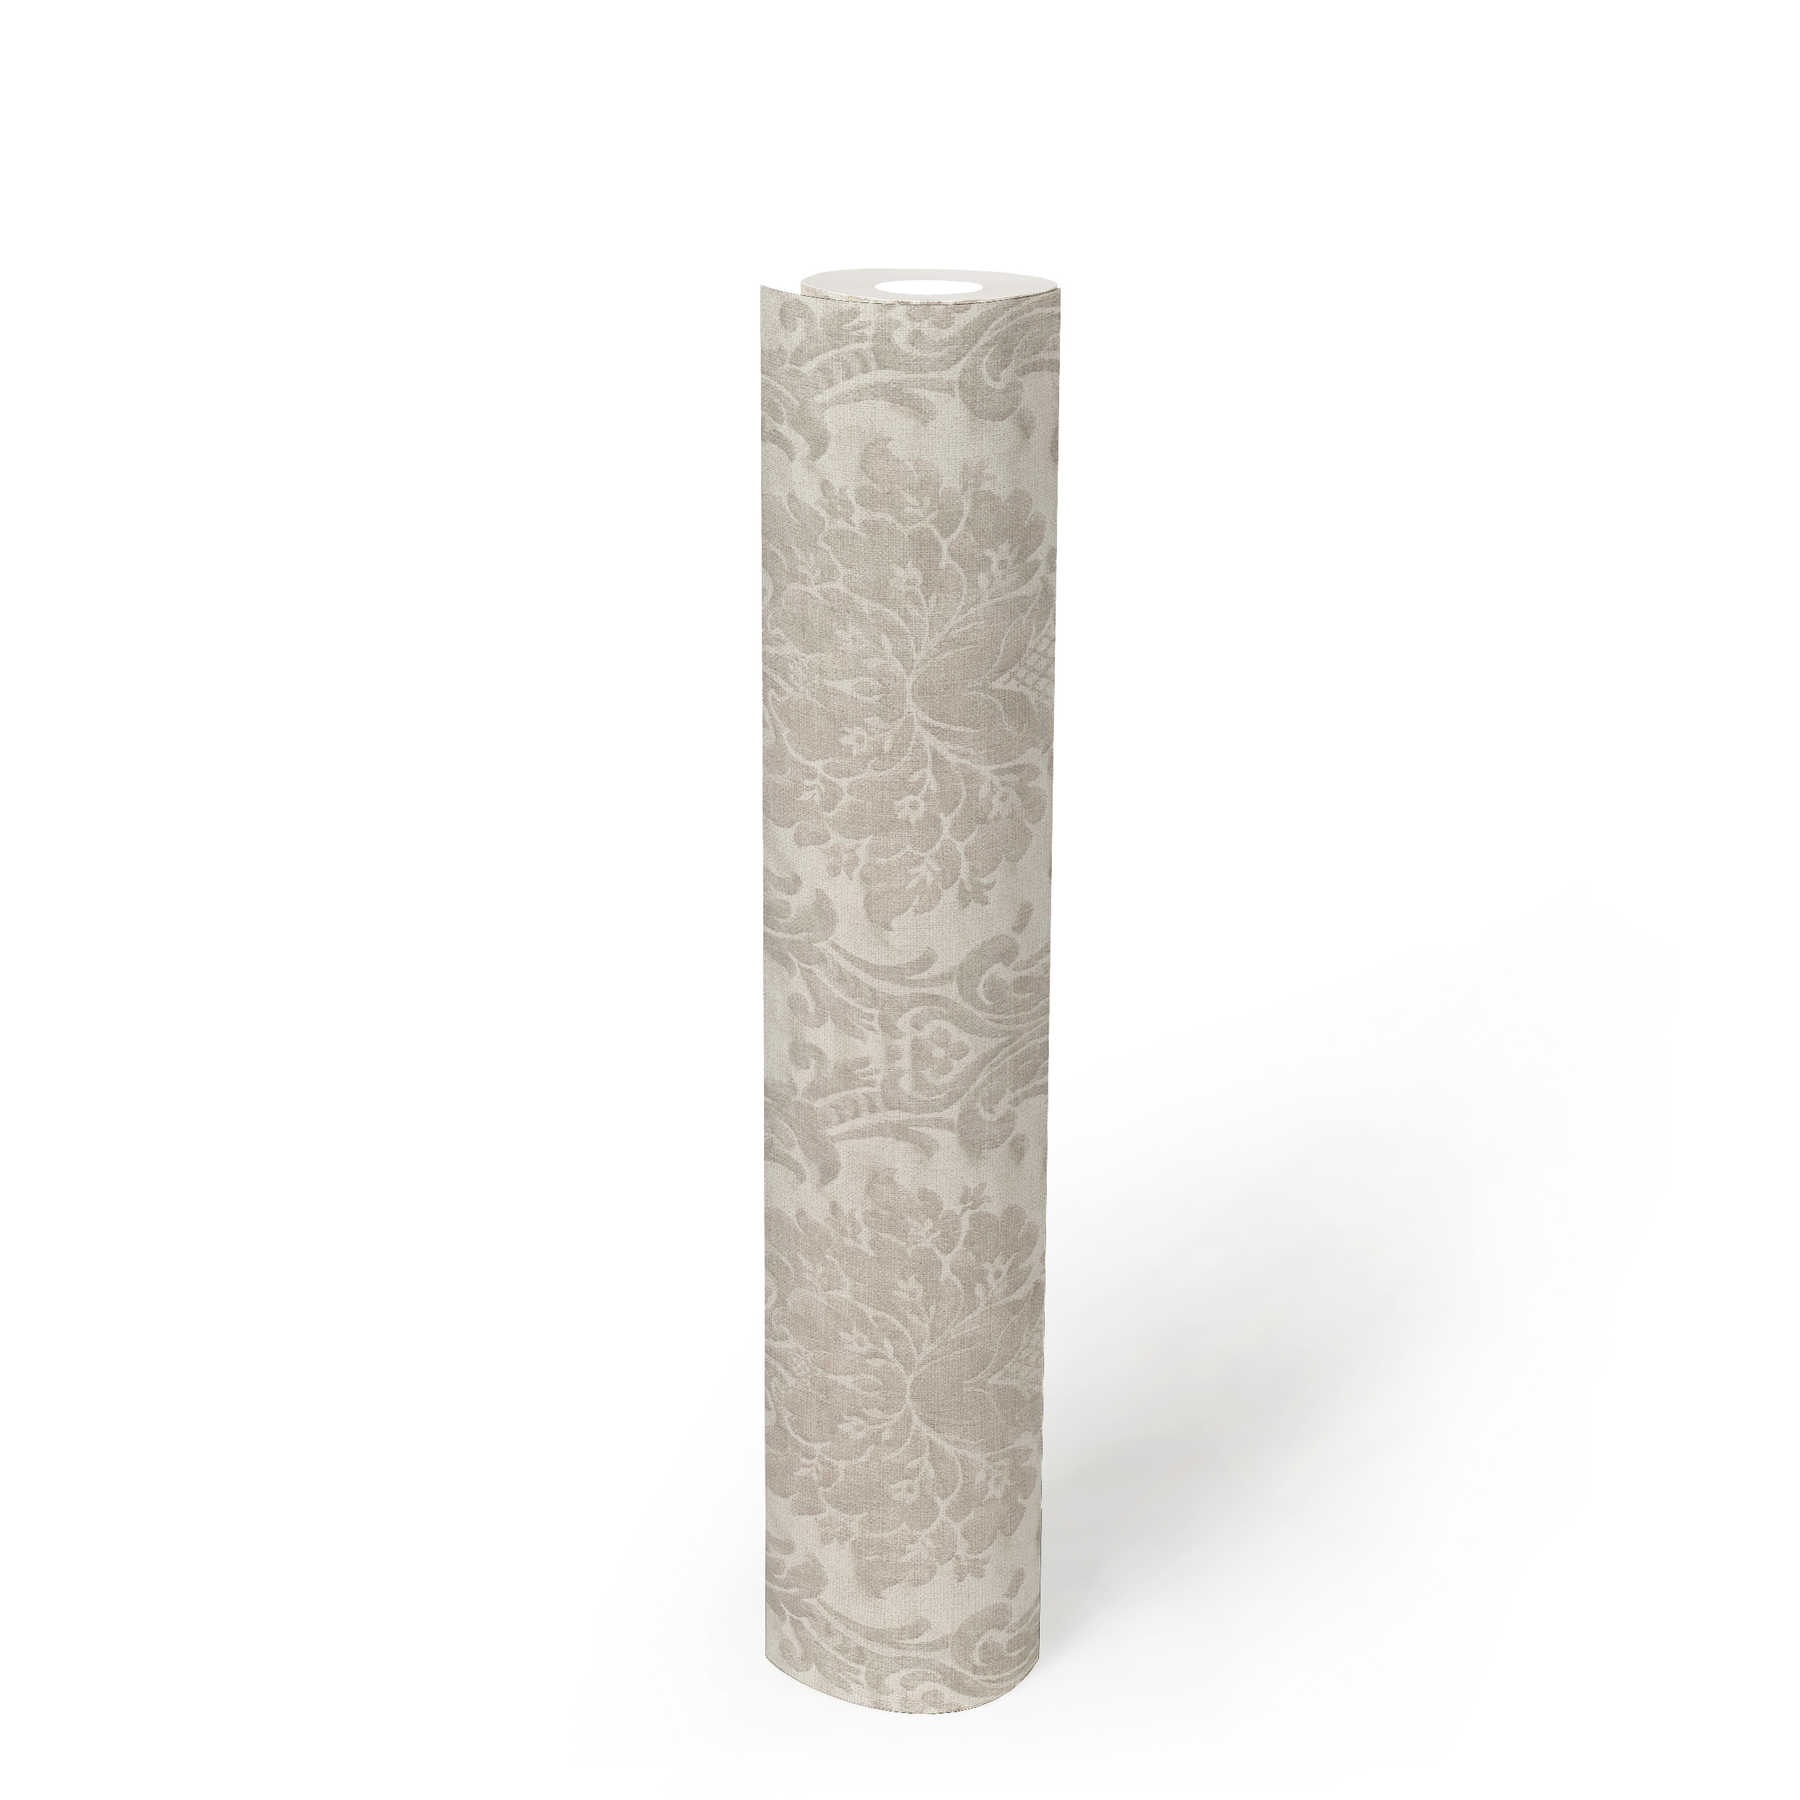             Papier peint ornemental vintage avec décor floral - beige, gris
        